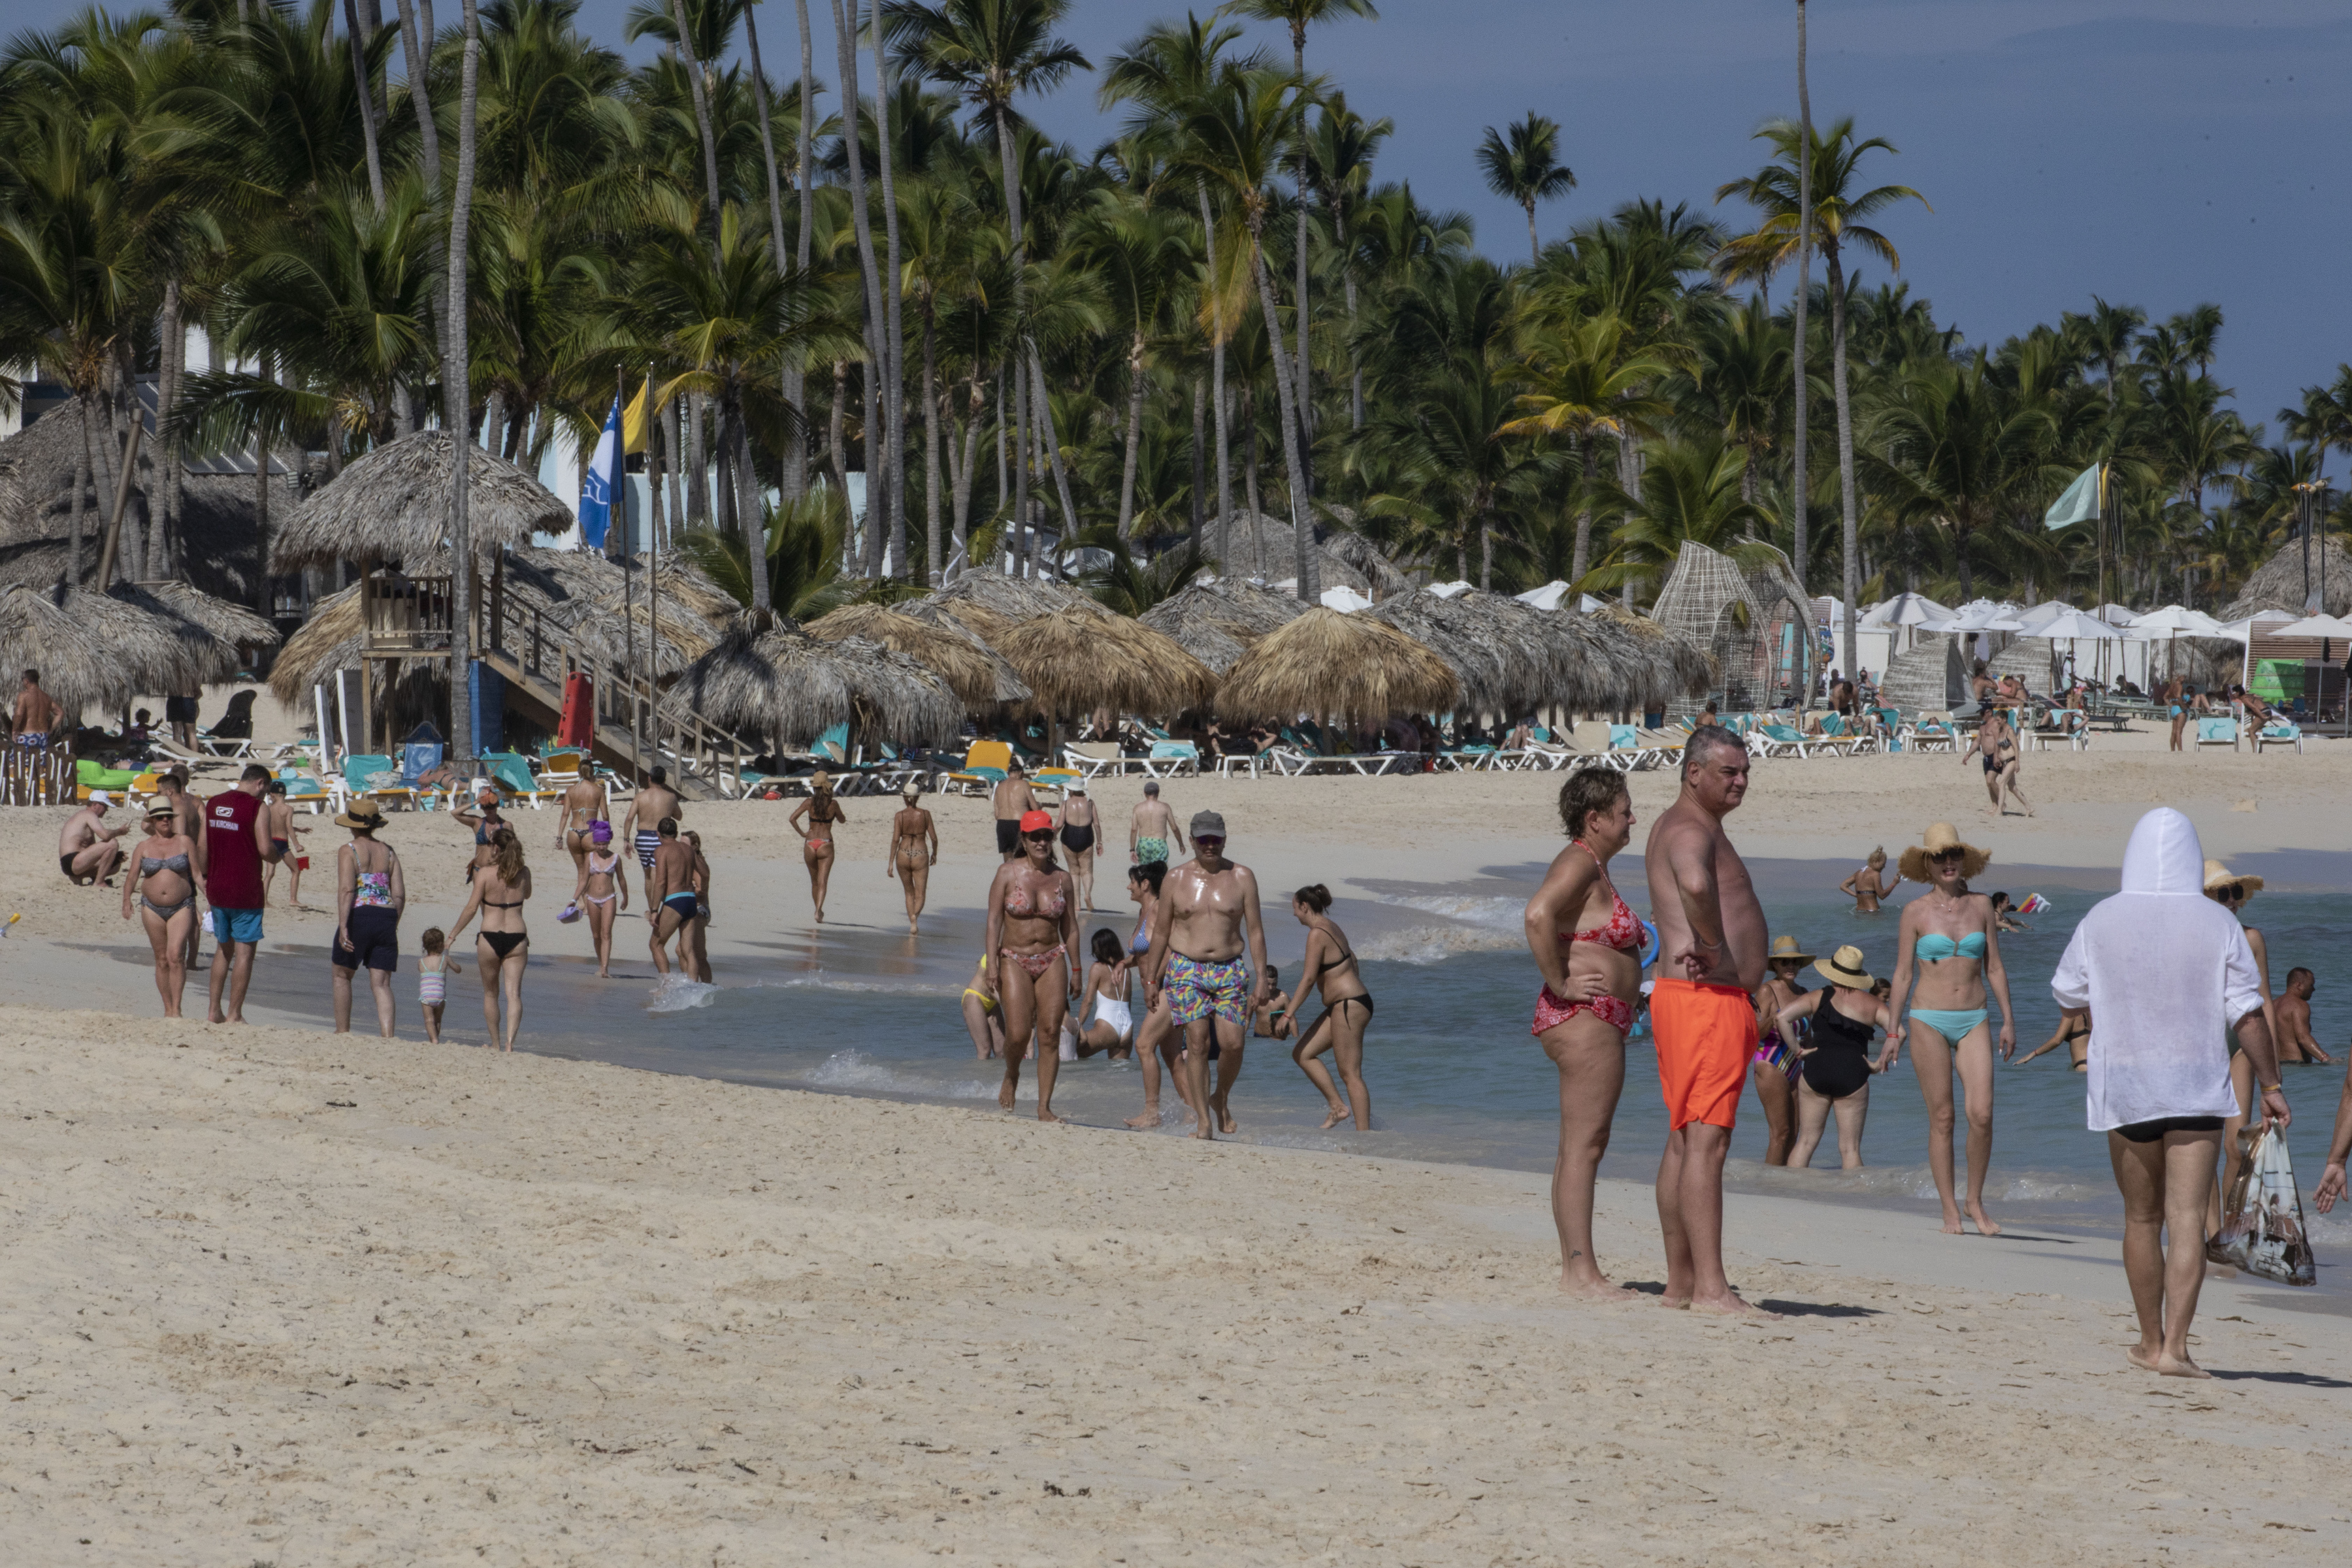 Una playa en Punta Cana, República Dominicana, el 12 de enero de 2022. El país es un caso raro de éxito en cuanto a la pandemia, ya que no se exige ninguna prueba de vacunación, ni resultados de pruebas, ni cuarentena para la mayoría de los viajeros que llegan. Pero algunos residentes muestran su preocupación. (Tony Cenicola/The New York Times)